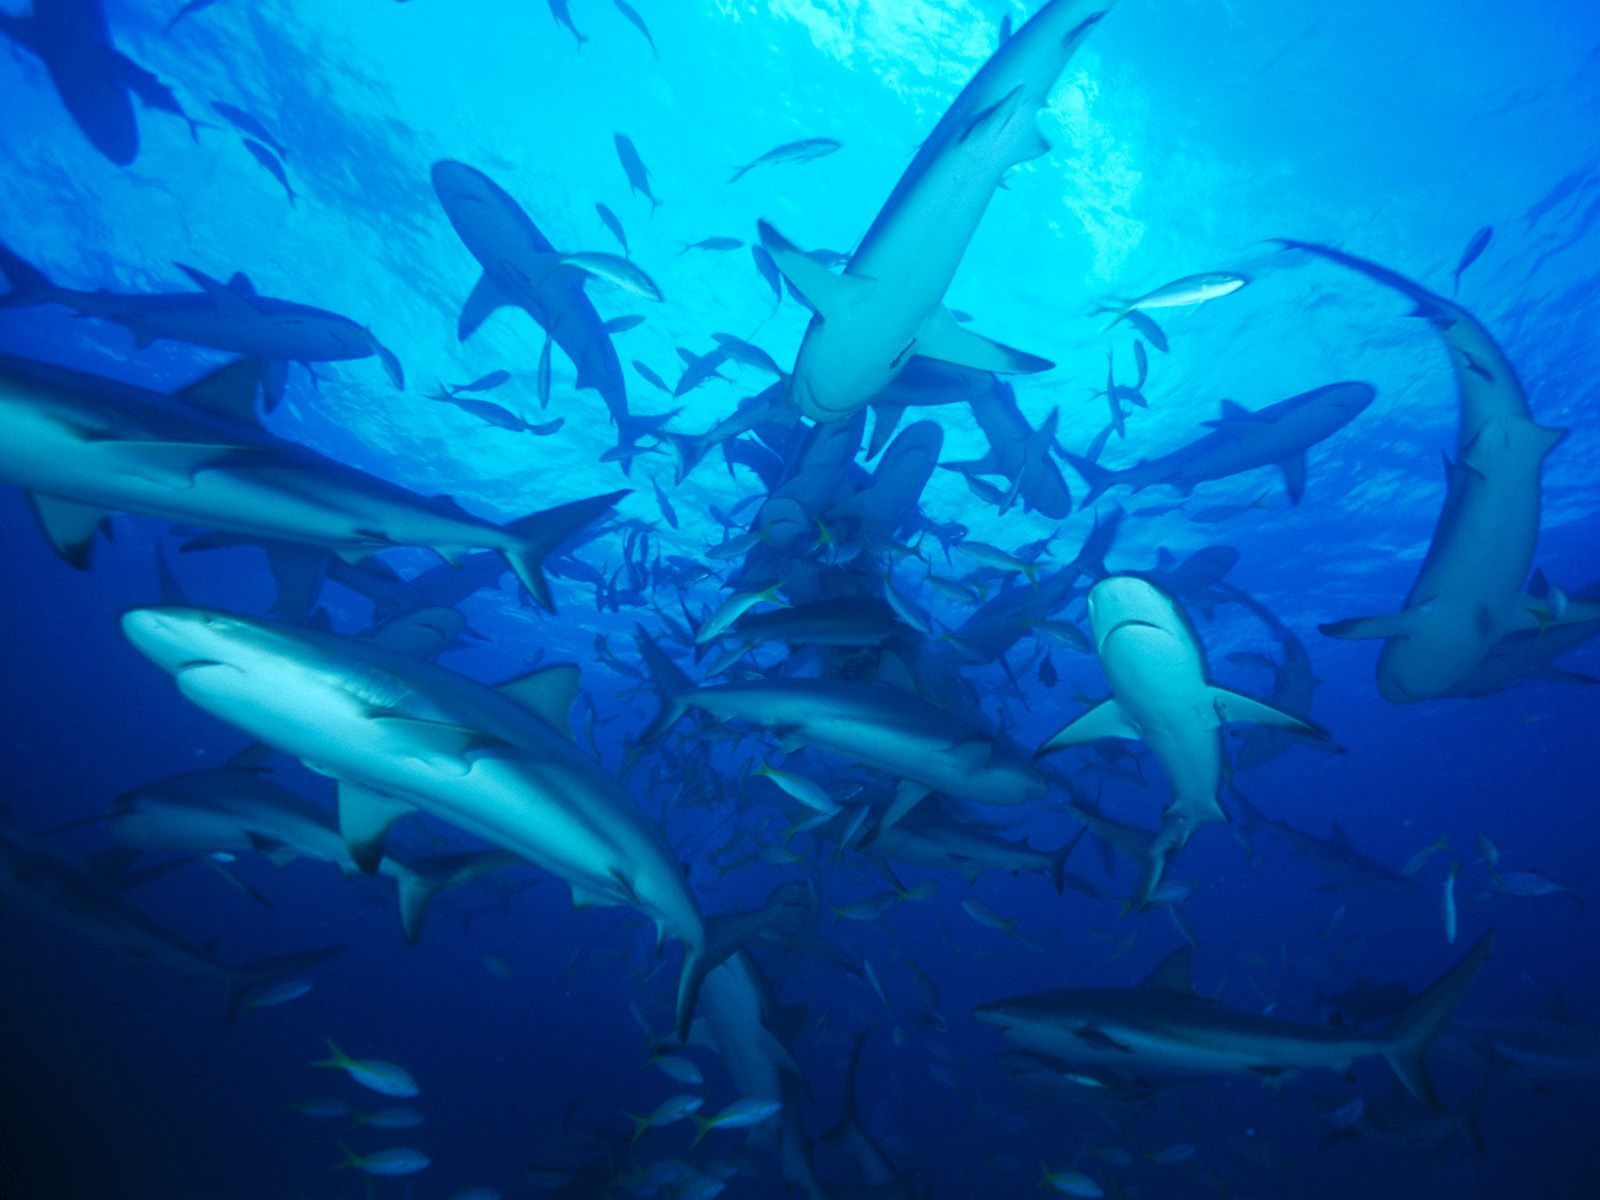 Bahamas ocean sharks underwater wallpaper - - High resolution